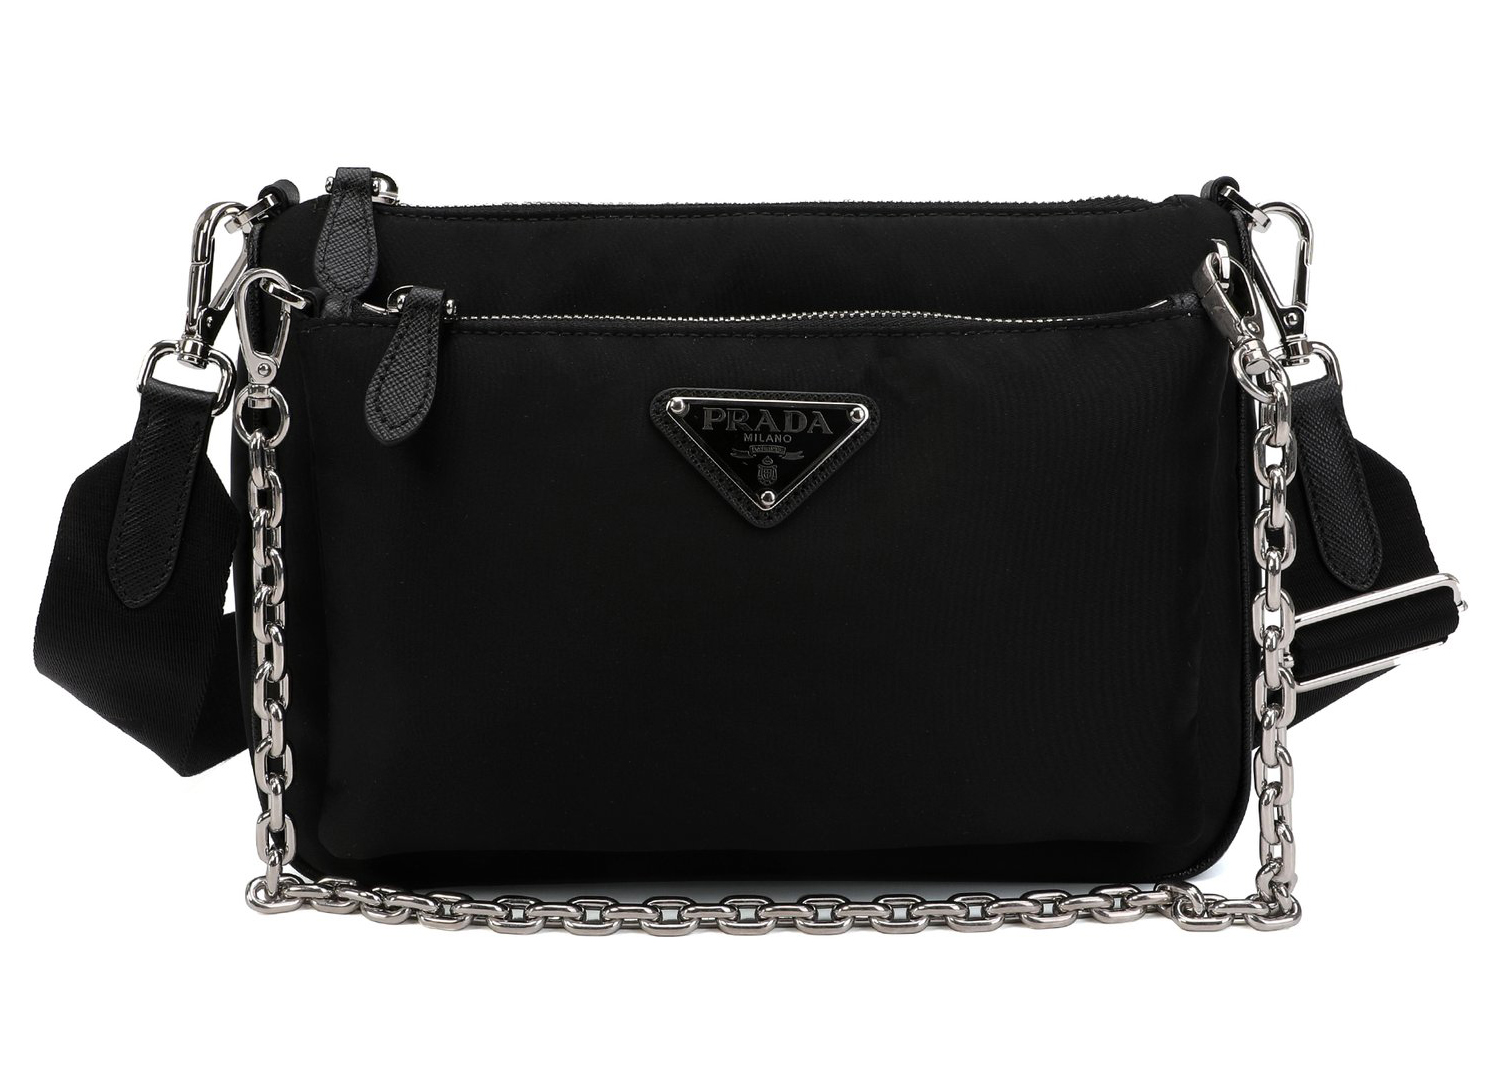 Prada Nylon Chain Link Shoulder Bag Black in Nylon with Silver 